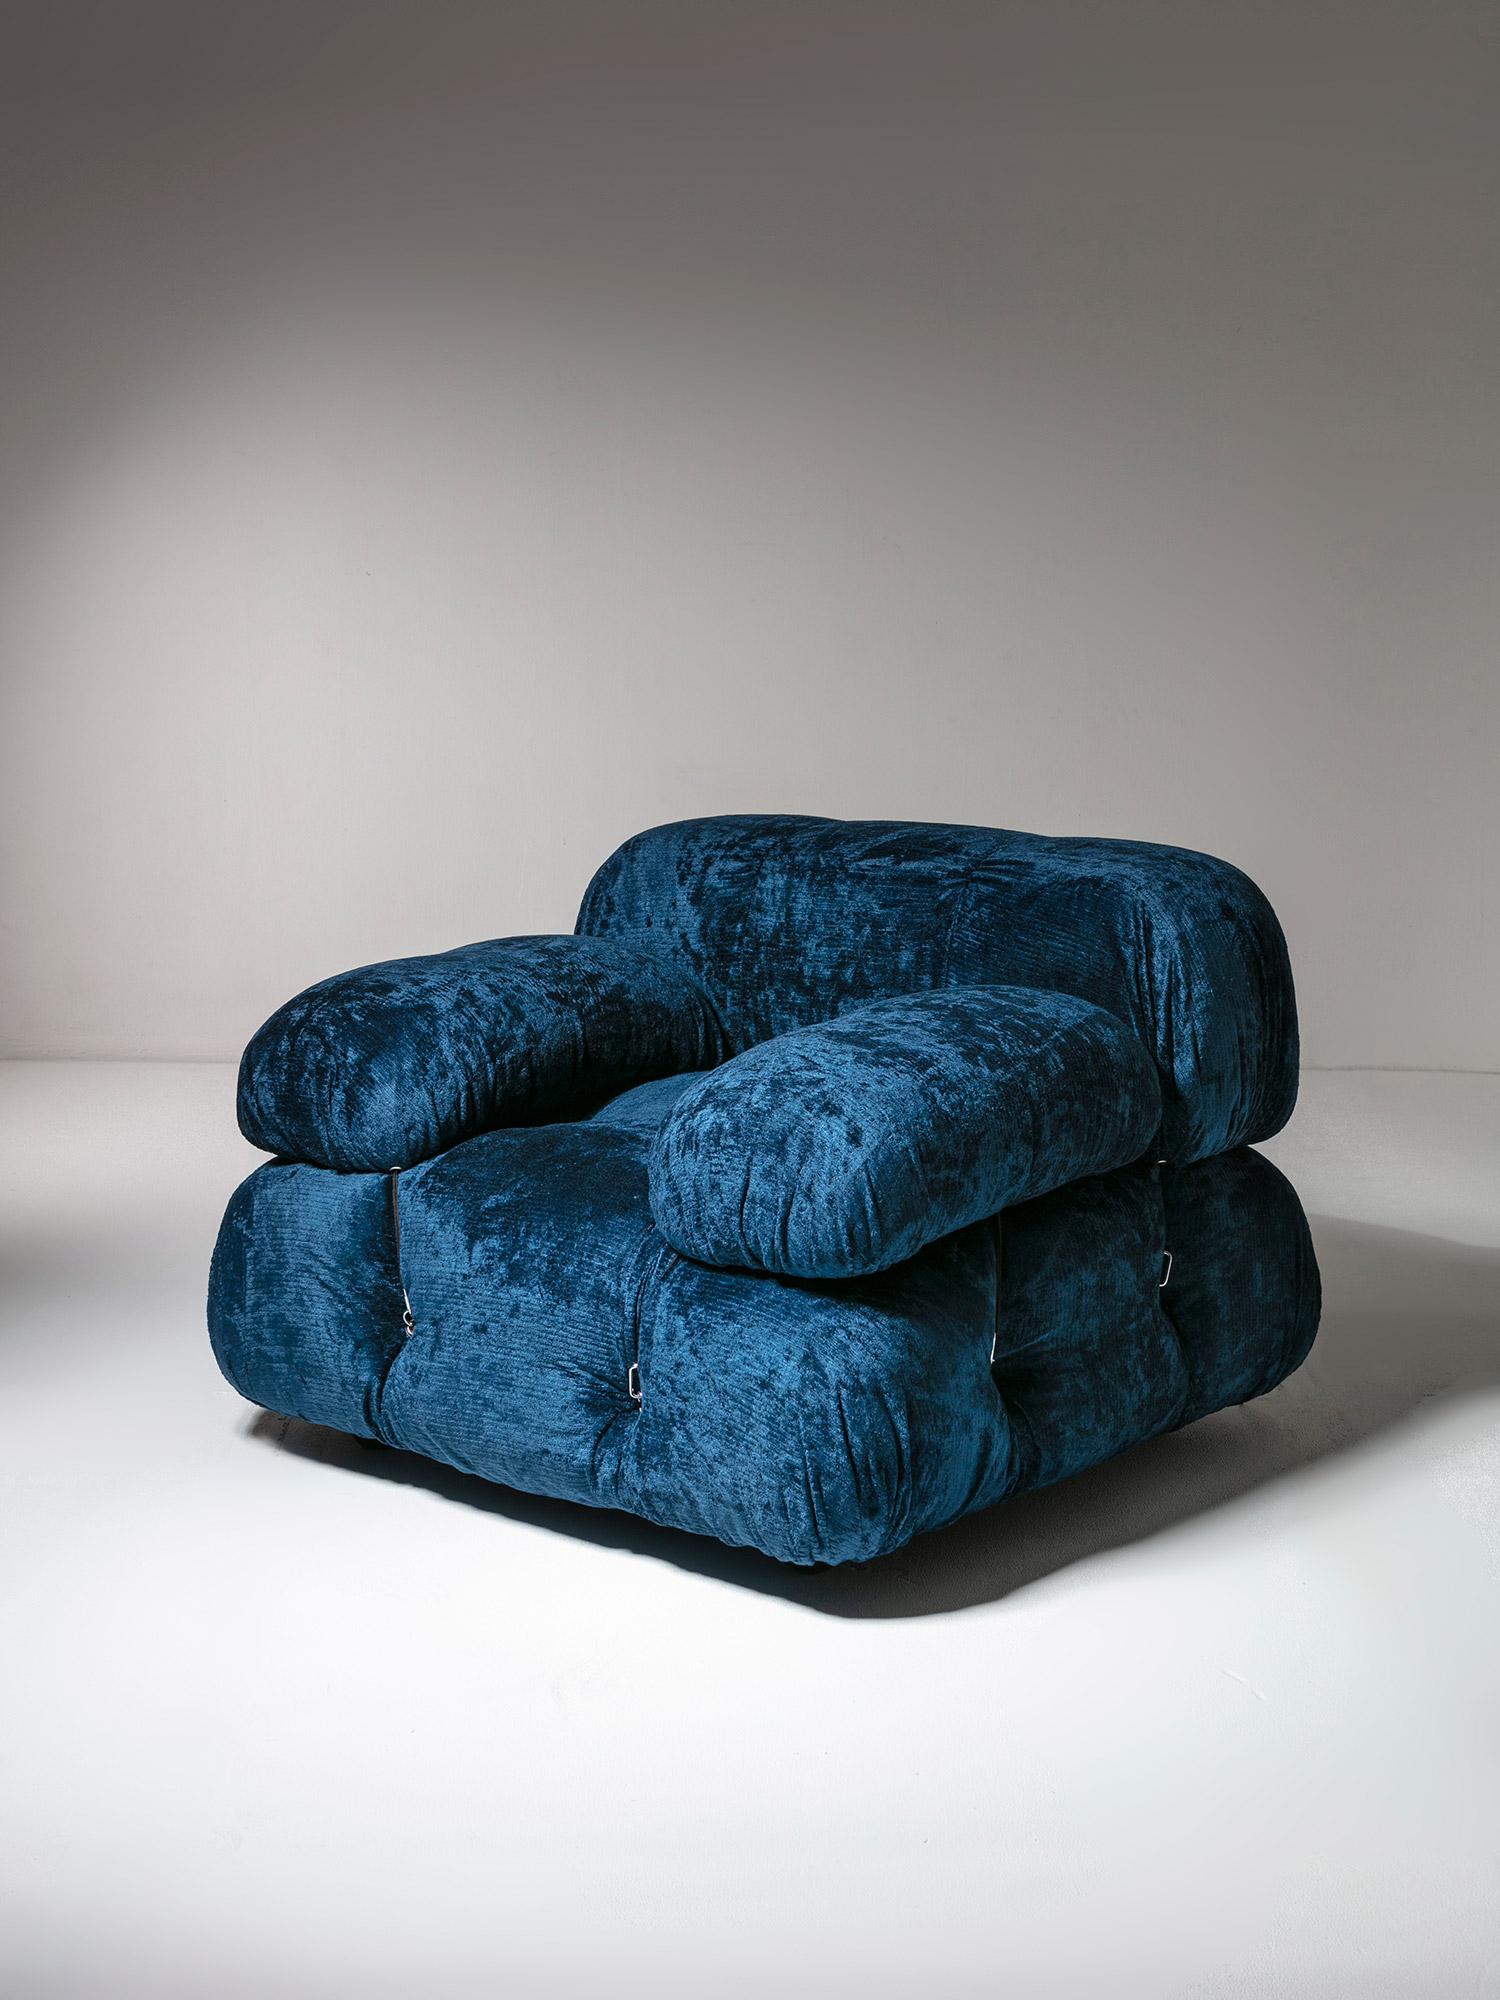 Seltener Camaleonda Sessel von Mario Bellini für B&B.
Ausgabe mit dem Label der 70er Jahre und blauem Chenillebezug.
Auch ein passendes Sofa ist erhältlich, siehe unser Inventar.